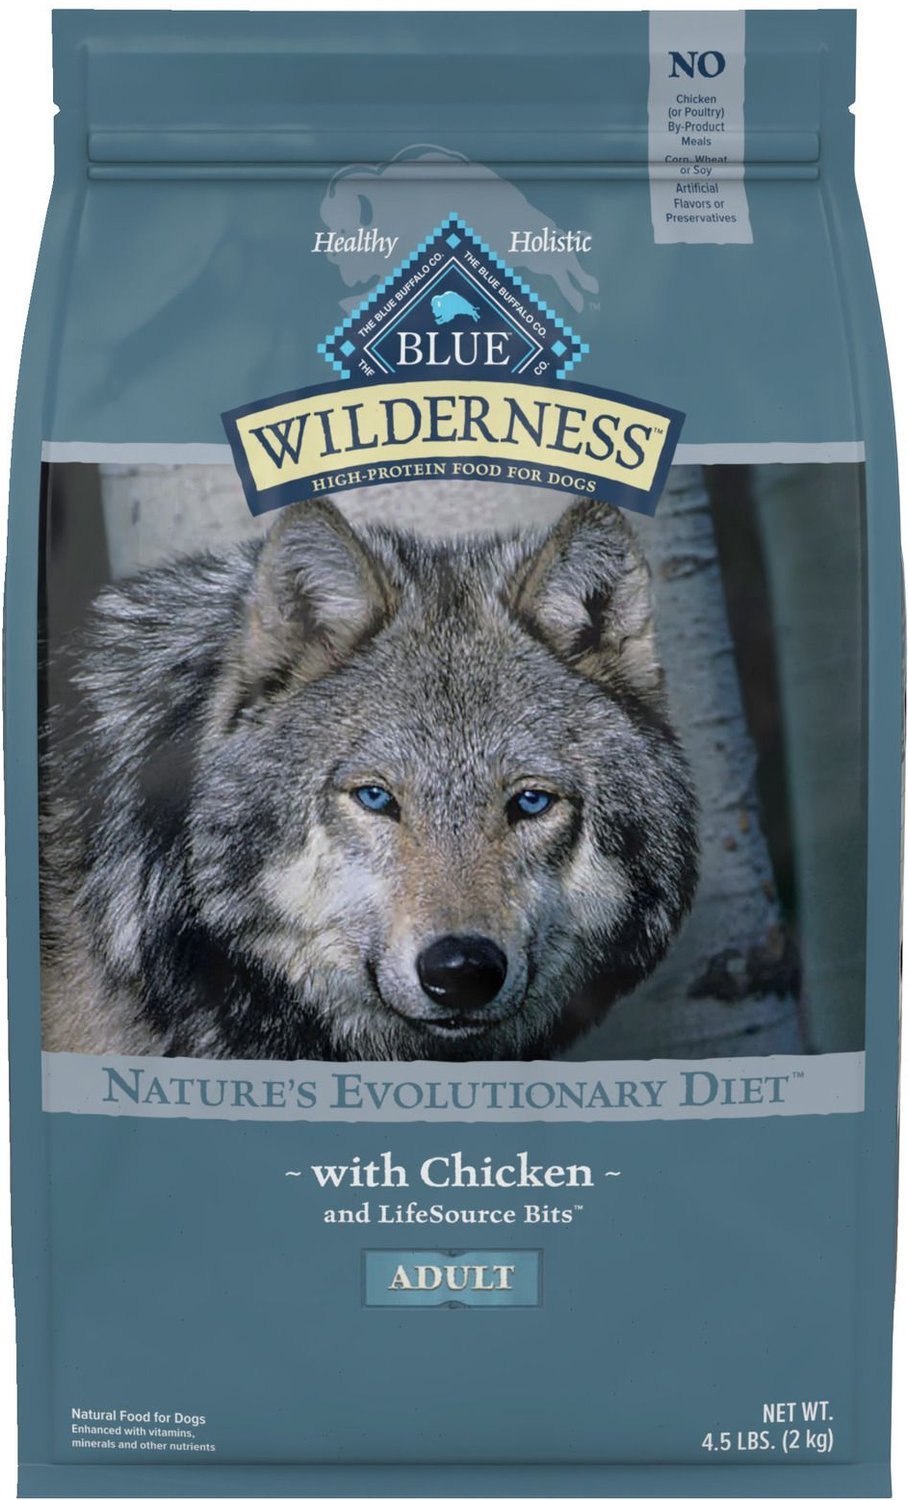 wilderness chicken dog food